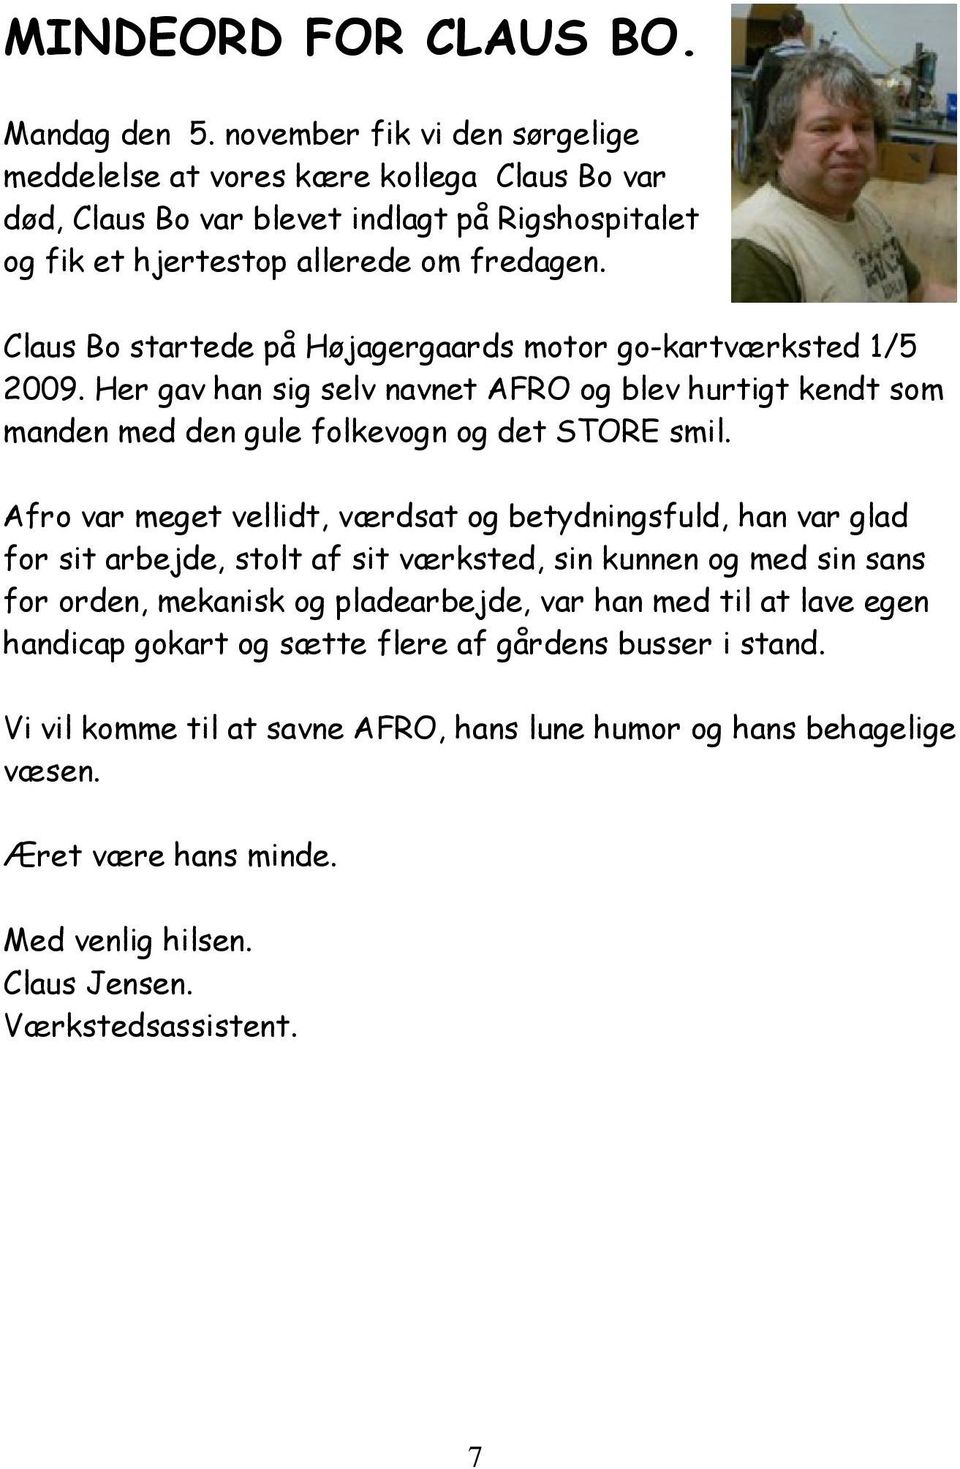 Claus Bo startede på Højagergaards motor go-kartværksted 1/5 2009. Her gav han sig selv navnet AFRO og blev hurtigt kendt som manden med den gule folkevogn og det STORE smil.